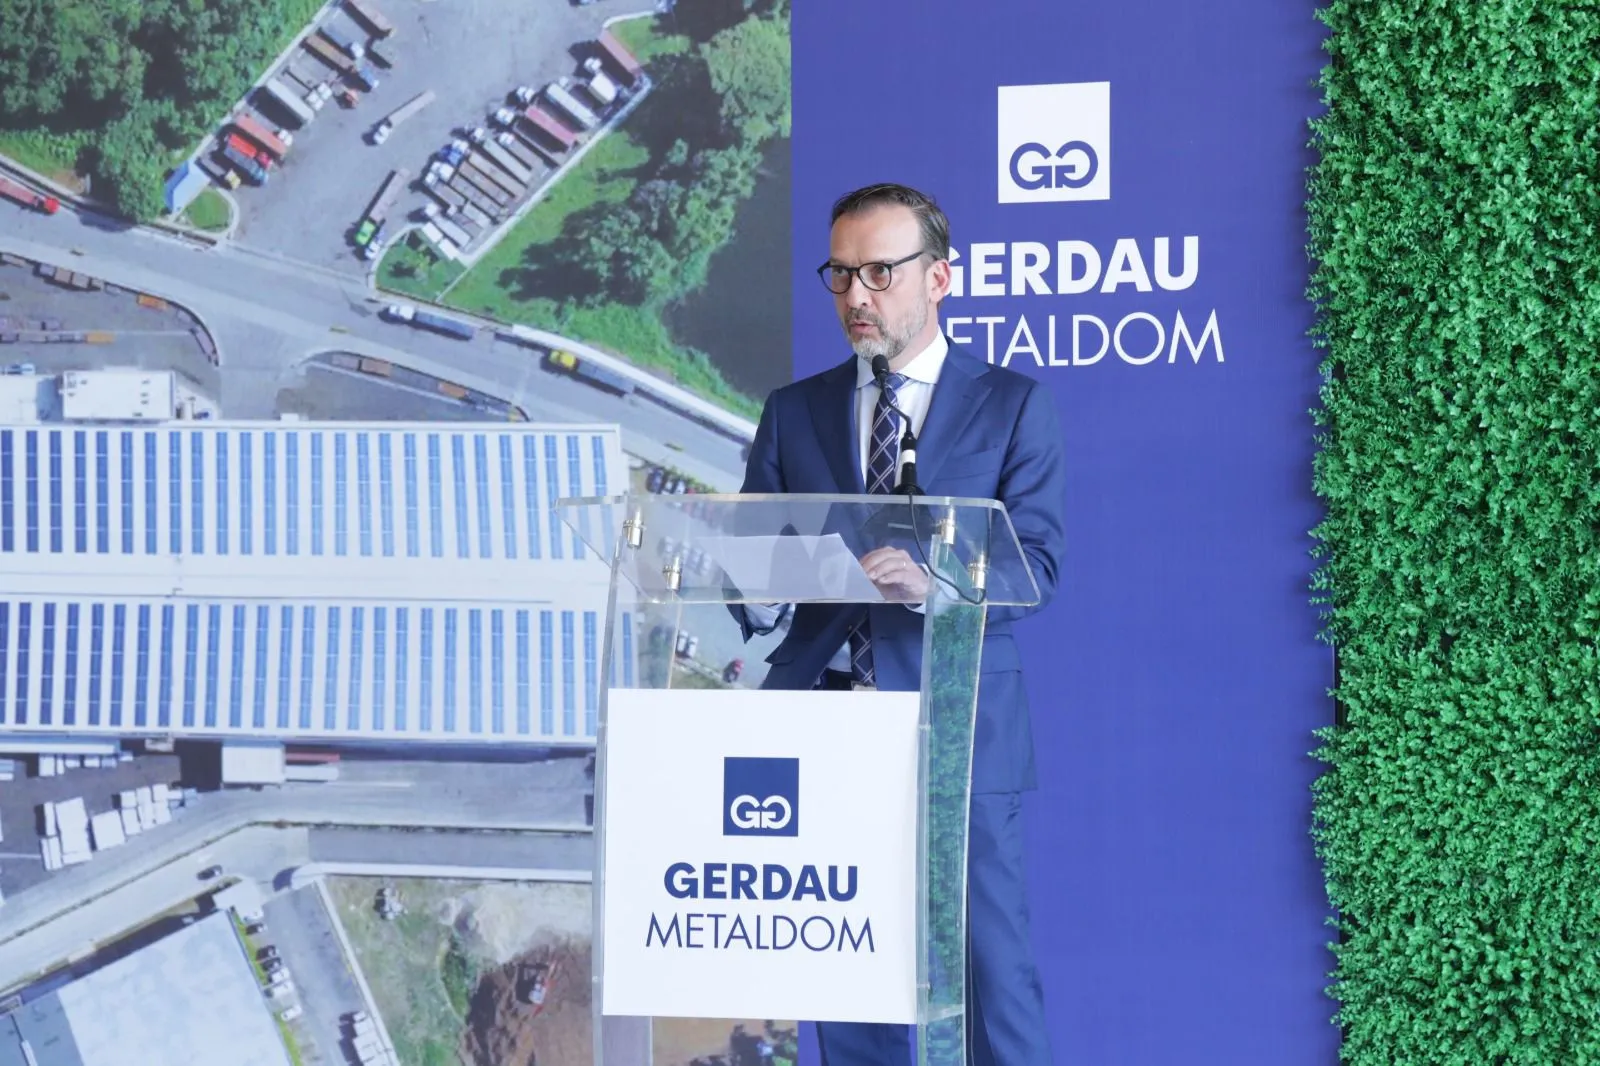 Gerdau Metaldom transforma su matriz energética con nuevo parque solar